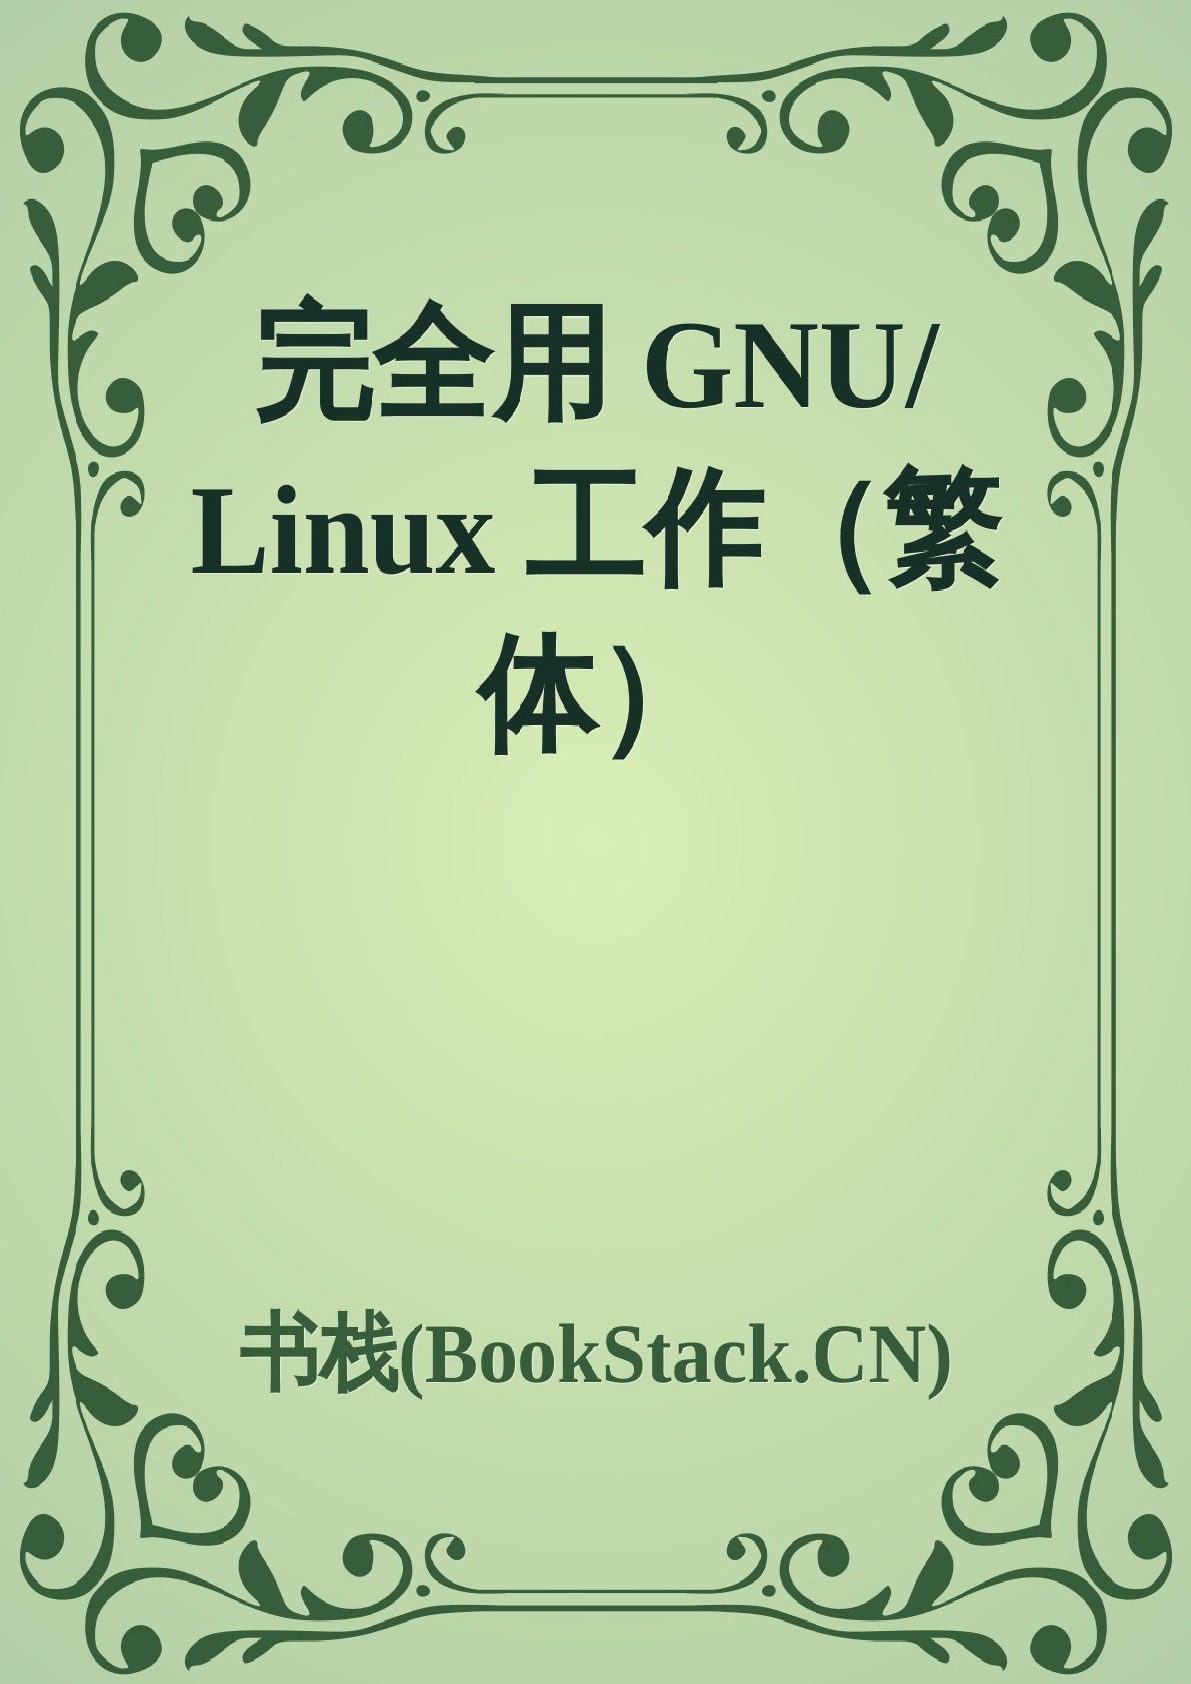 完全用GNU_Linux工作-繁体